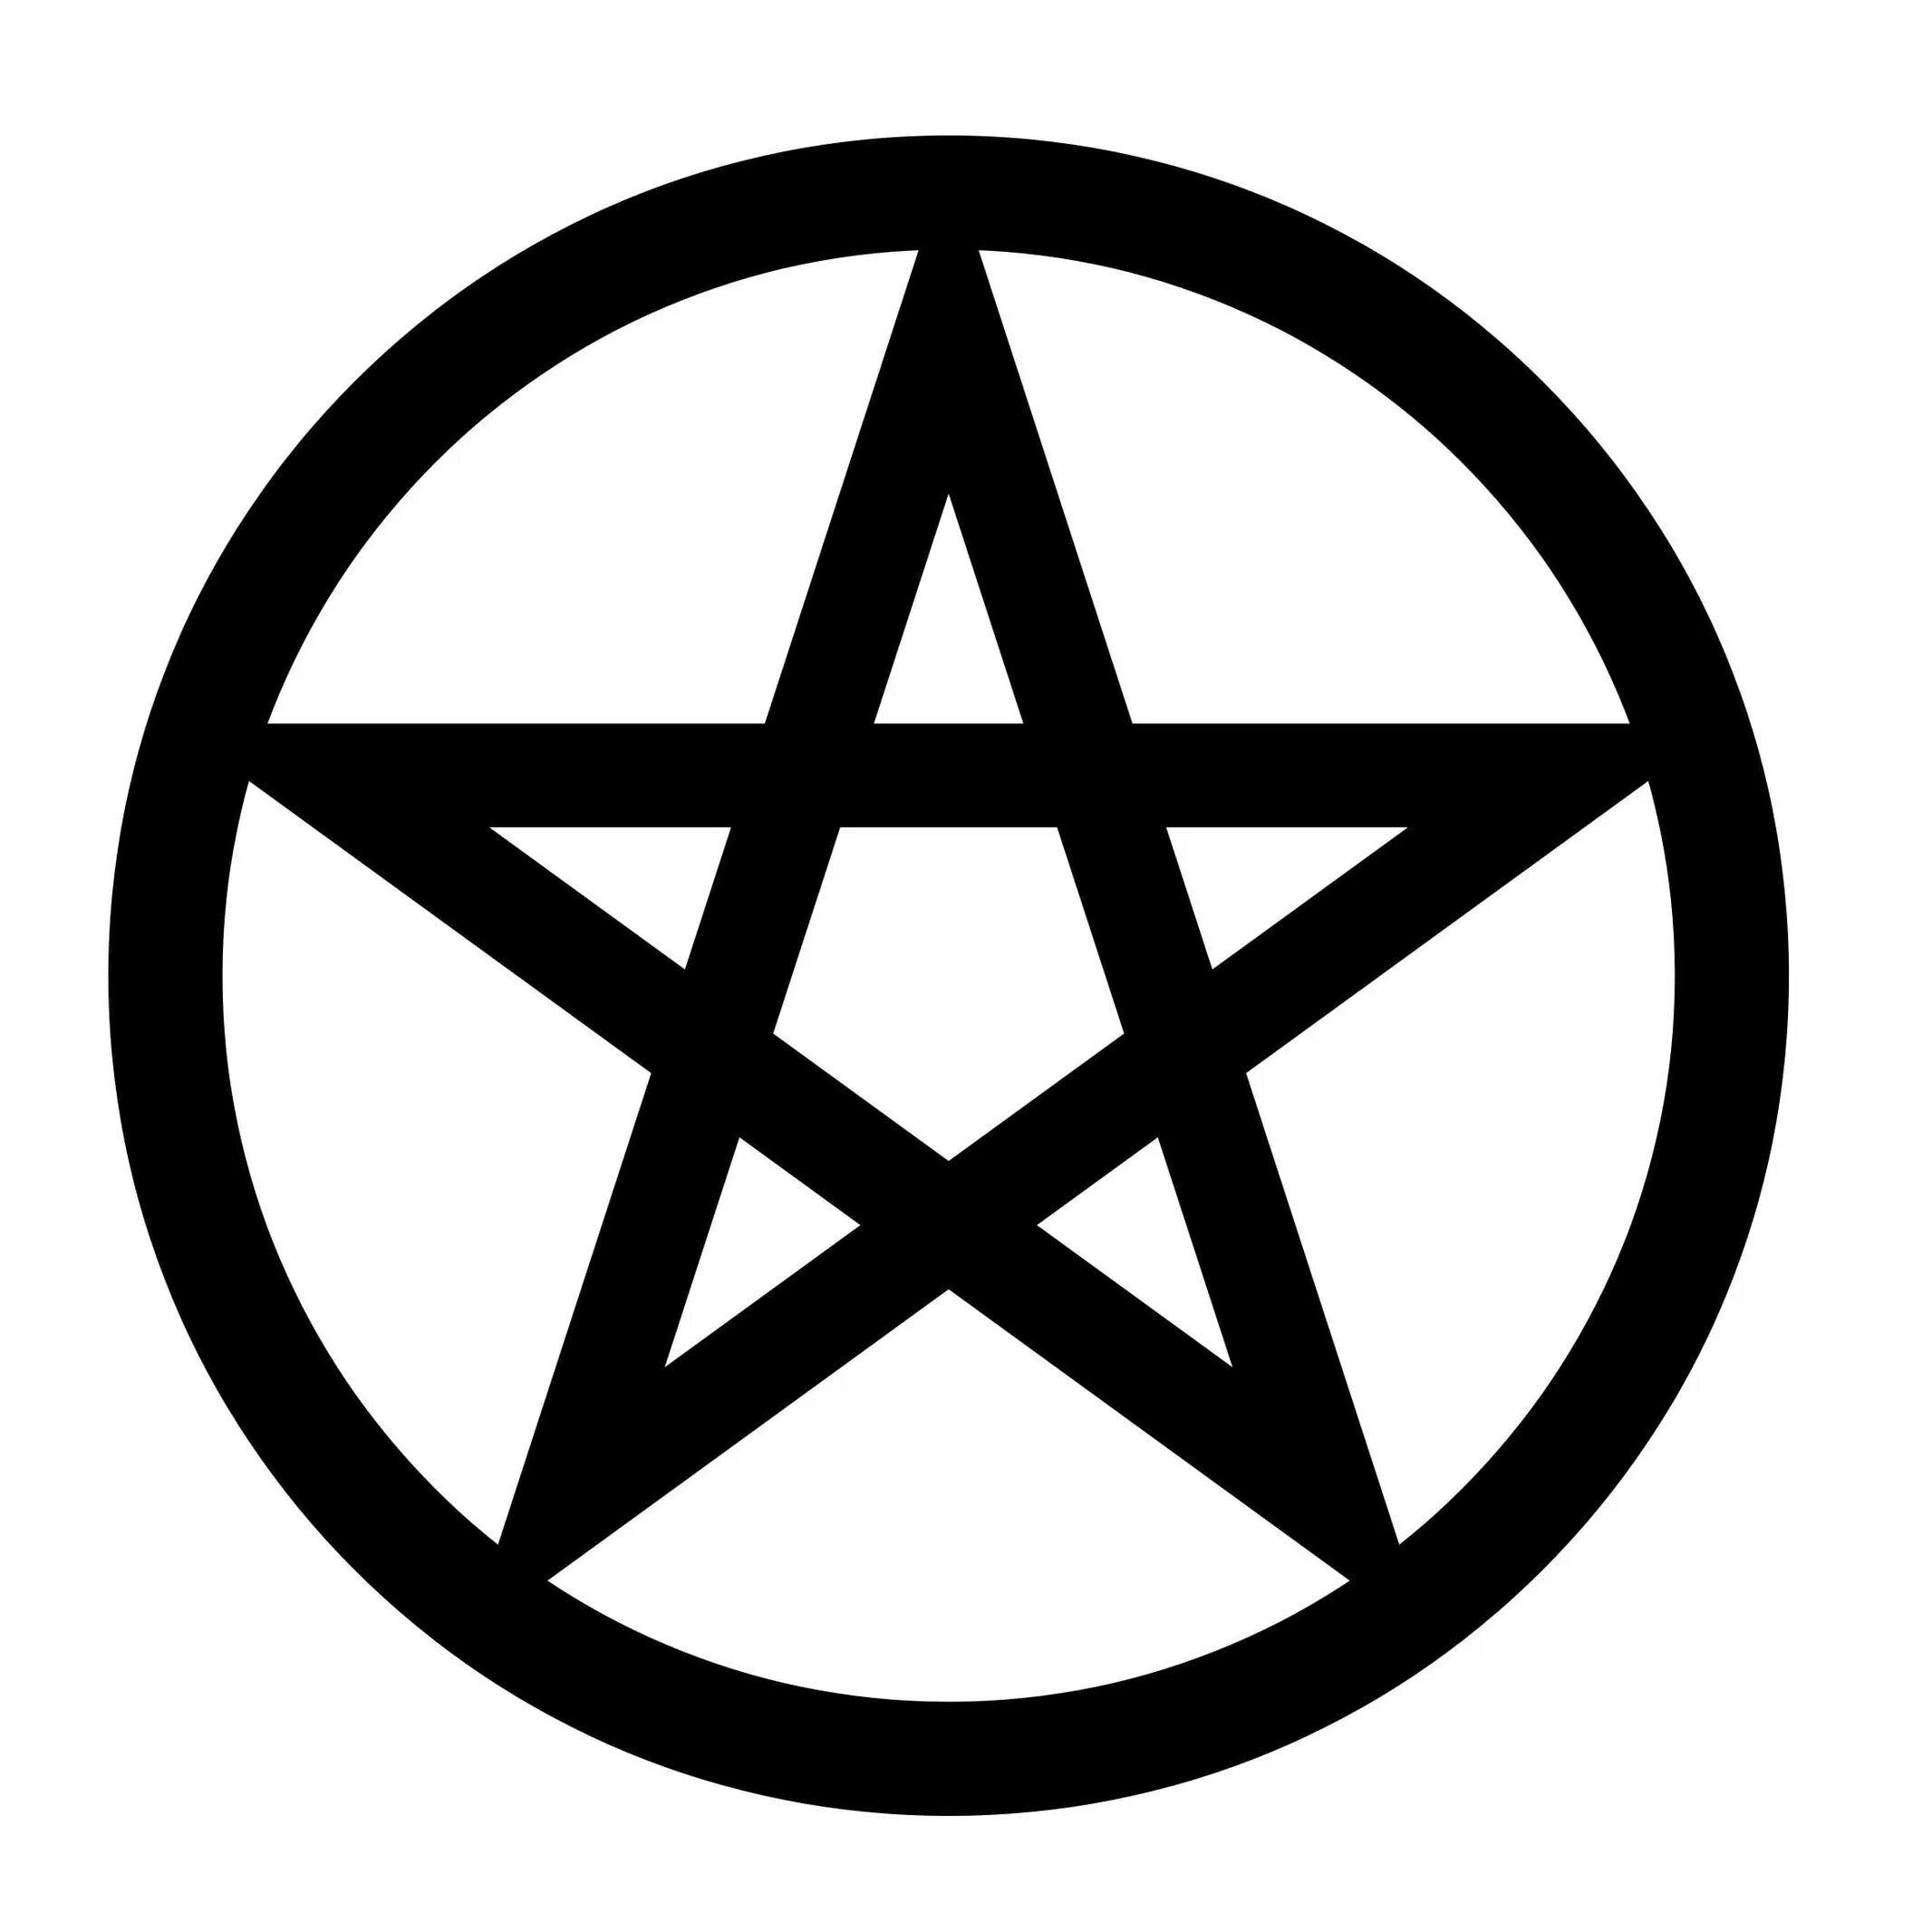 Круг внутри звезда. Пятиконечная звезда в круге символ. Знаки сатанинские пентаграммы. Звезда пентаграмма символ. Пентакль пятиконечная звезда.